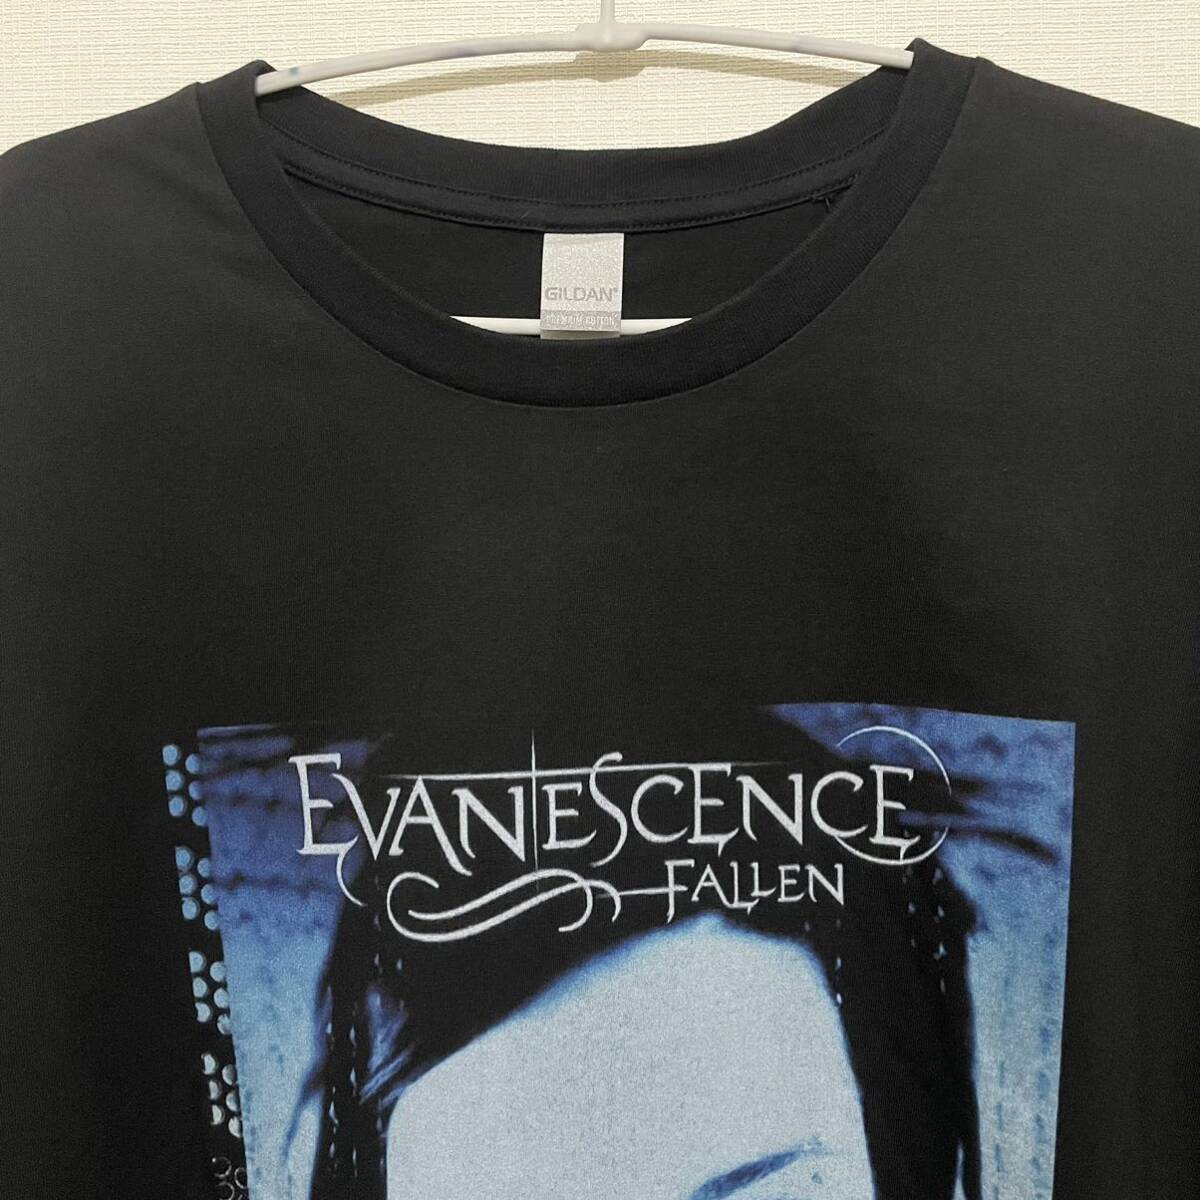 EVANESCENCE Tシャツ Fallen 2XLサイズ エヴァネッセンス Tee